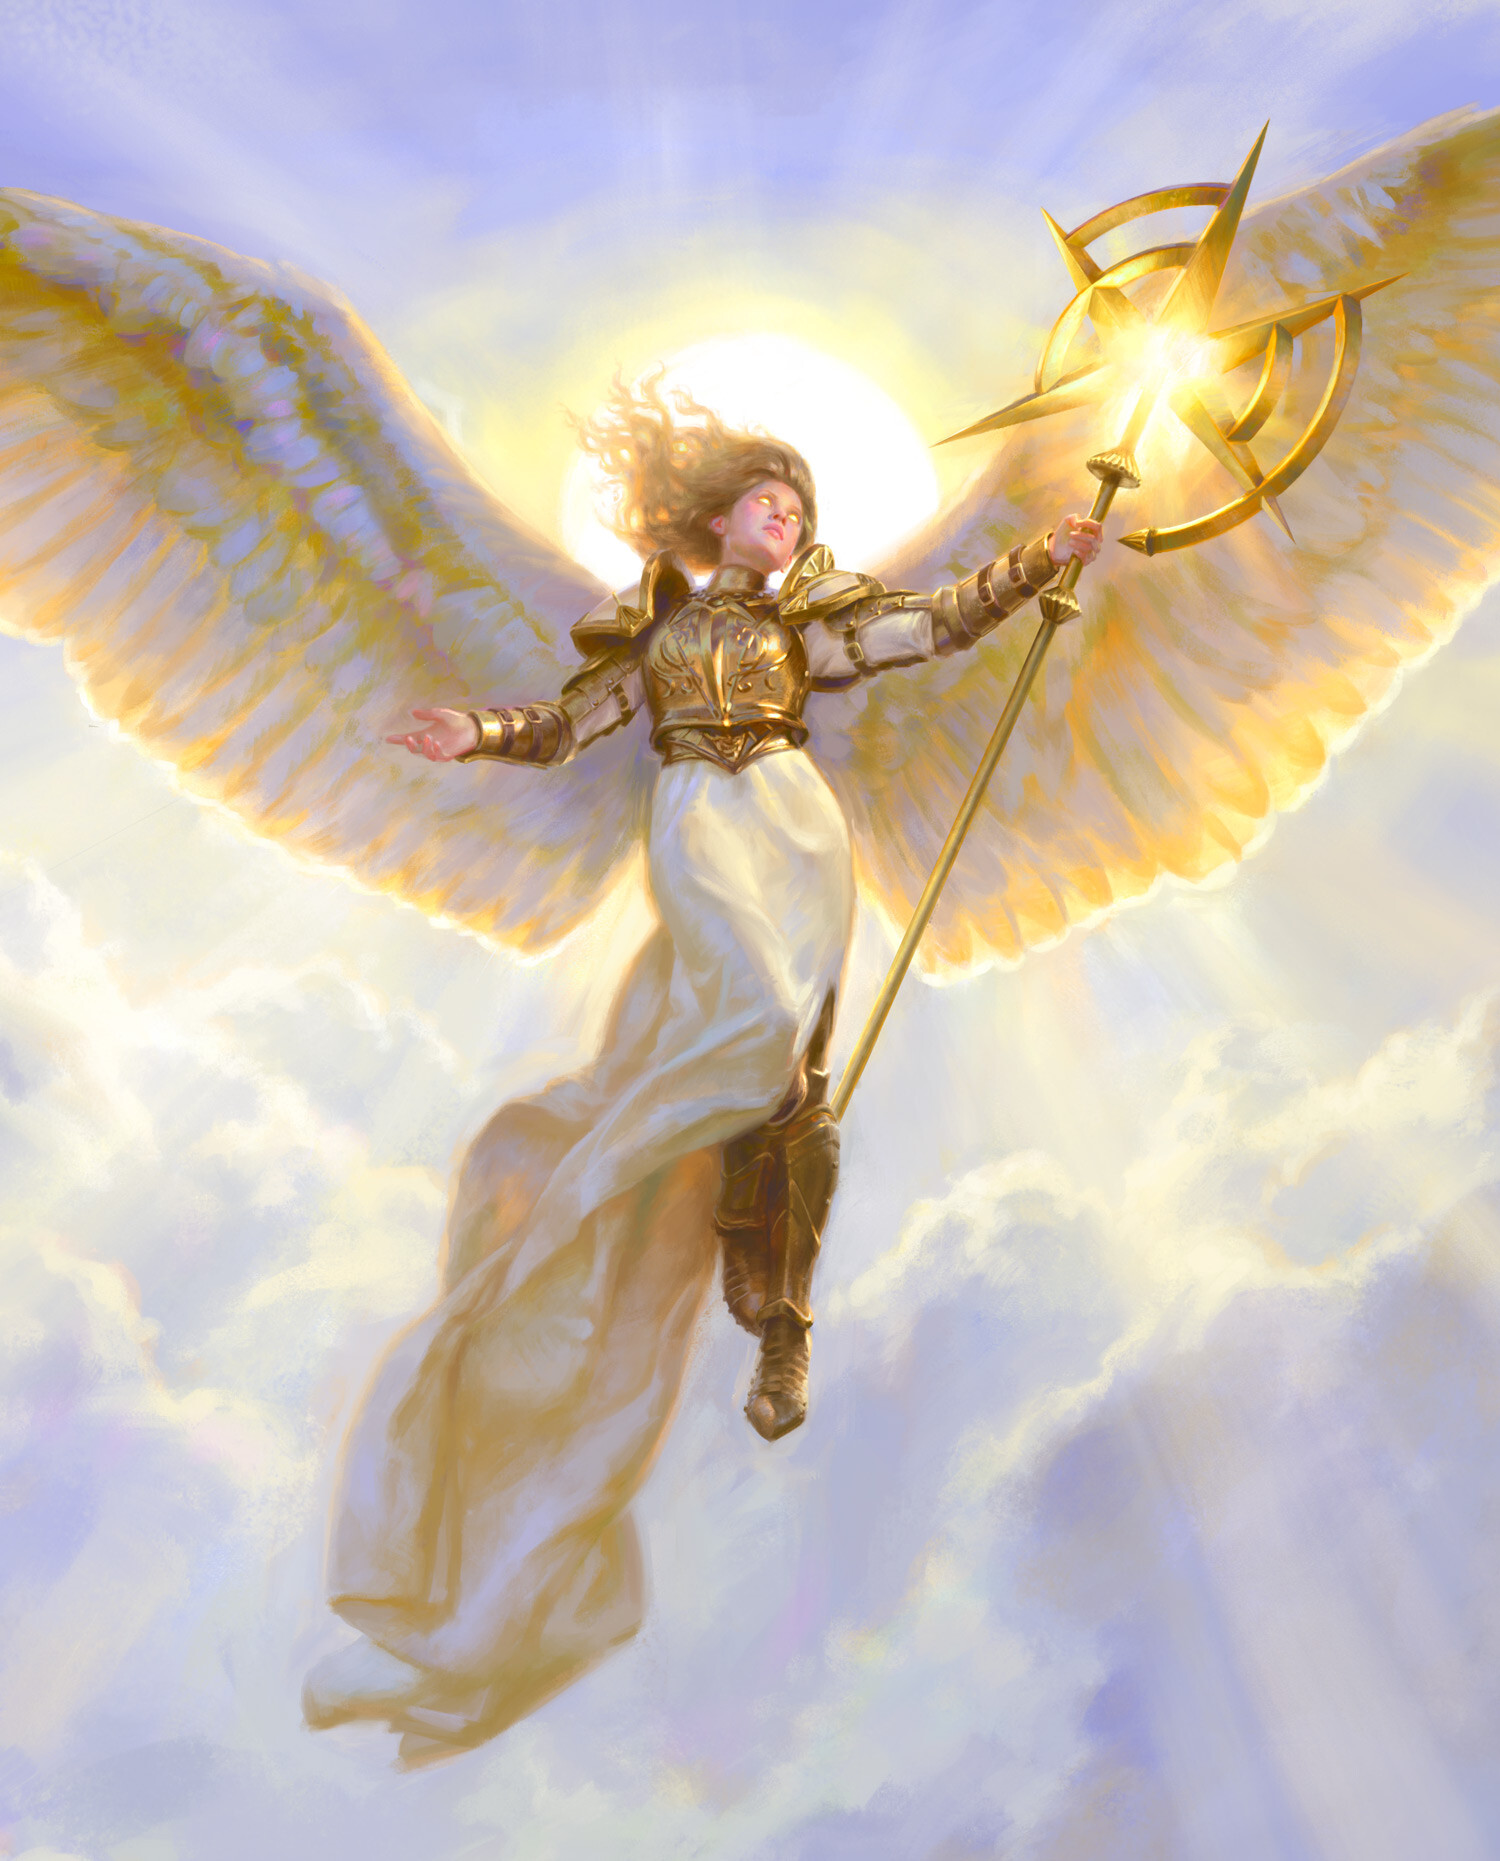 Số thiên thần 7 đại diện cho nguồn năng lượng lớn của tâm linh và mang theo những lời chúc phúc từ các thiên thần.